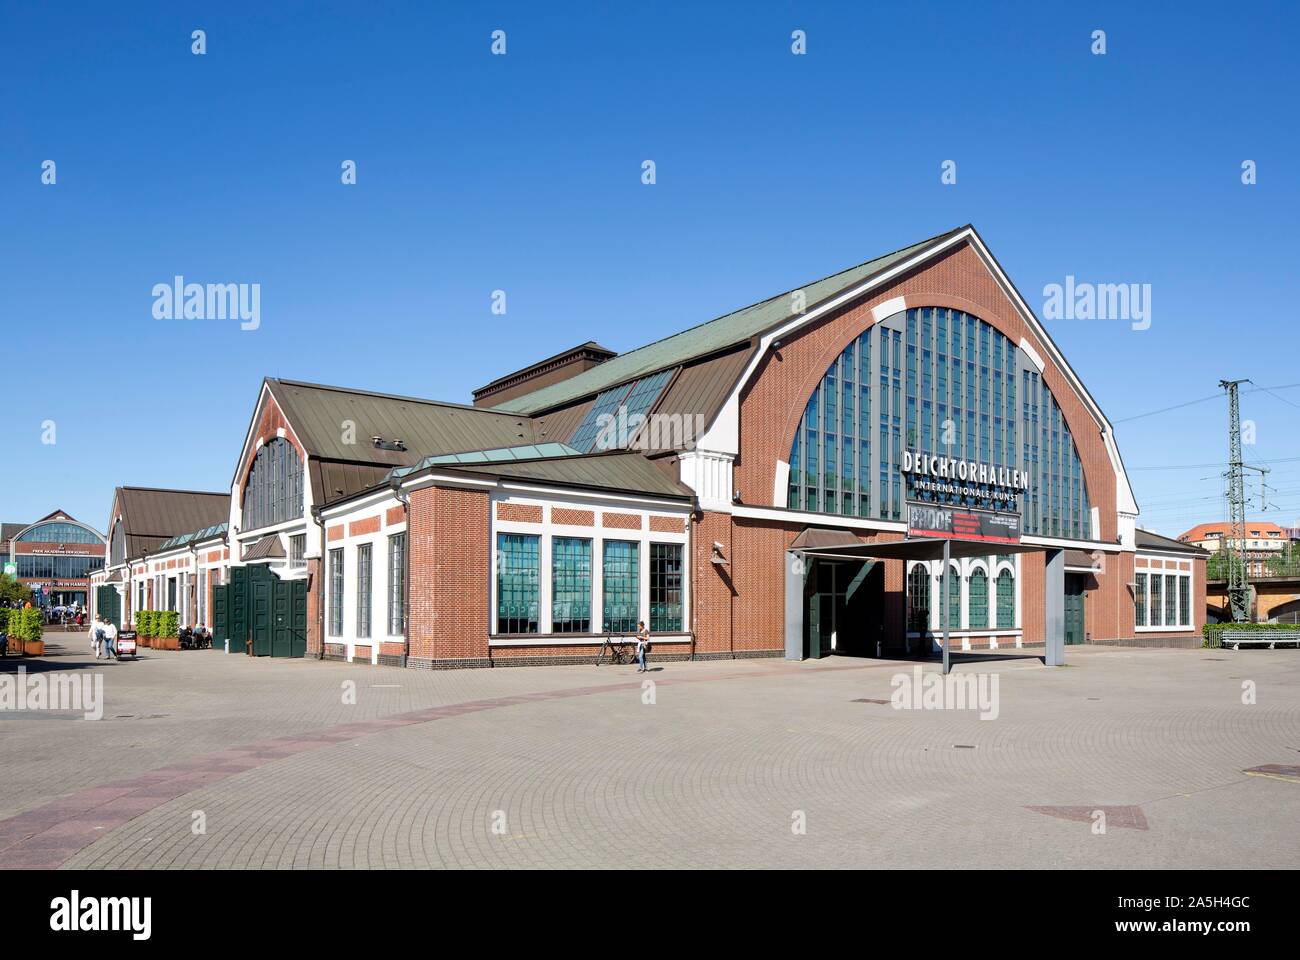 Deichtorhallen, ex magazzini e sale di mercato, oggi casa internazionale della fotografia e della collezione d'arte, Amburgo, Germania Foto Stock